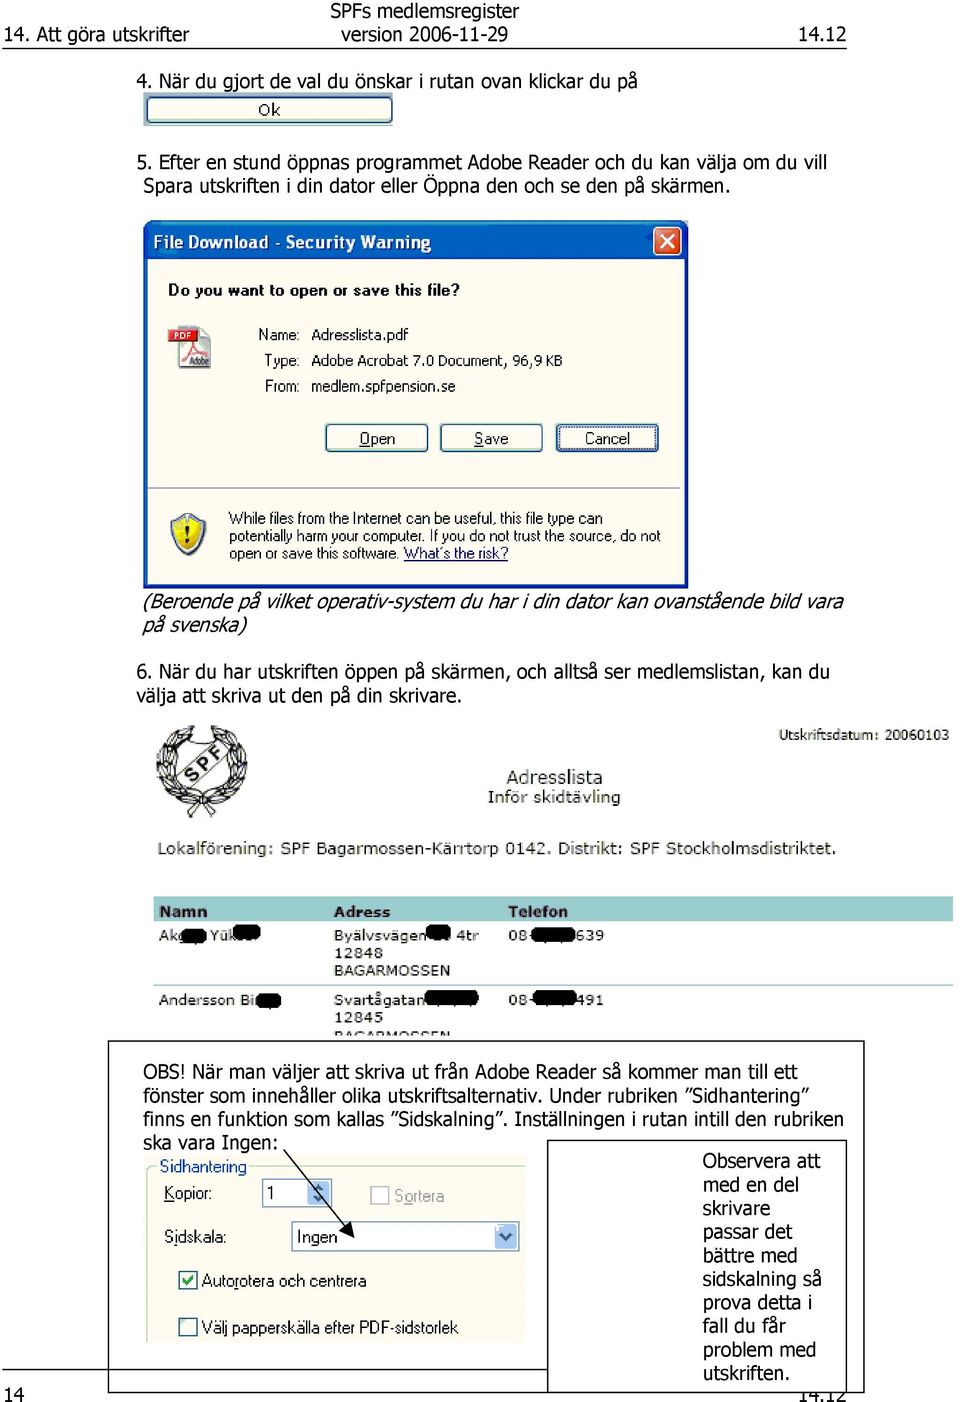 (Beroende på vilket operativ-system du har i din dator kan ovanstående bild vara på svenska) 6.